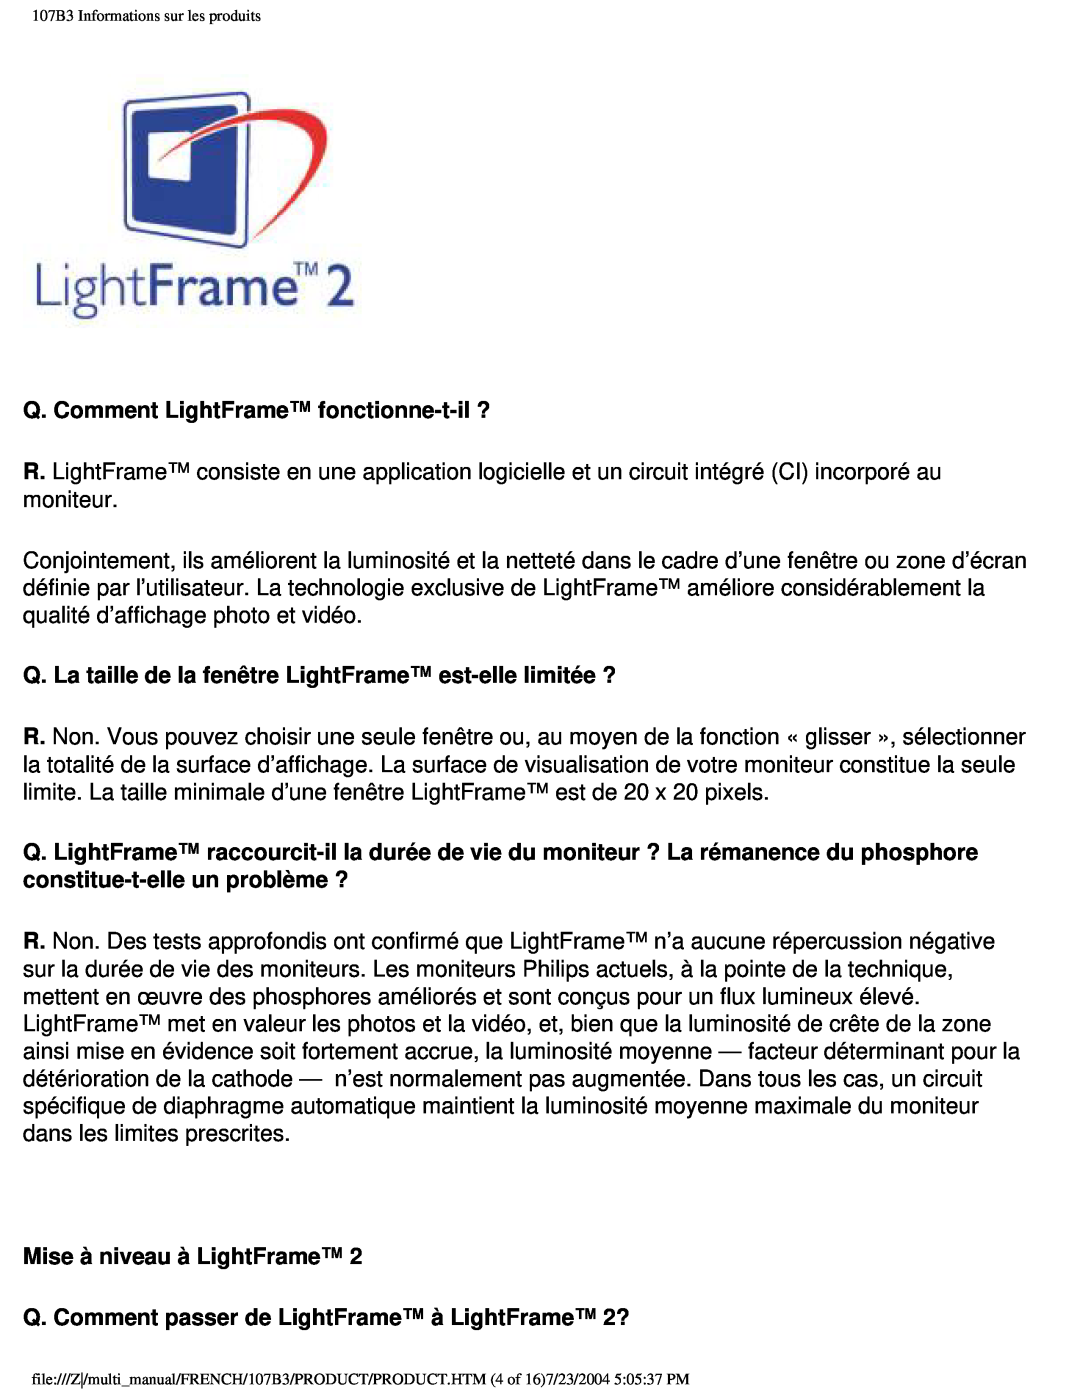 Philips Q. Comment LightFrame fonctionne-t-il?, Mise à niveau à LightFrame, 107B3 Informations sur les produits 